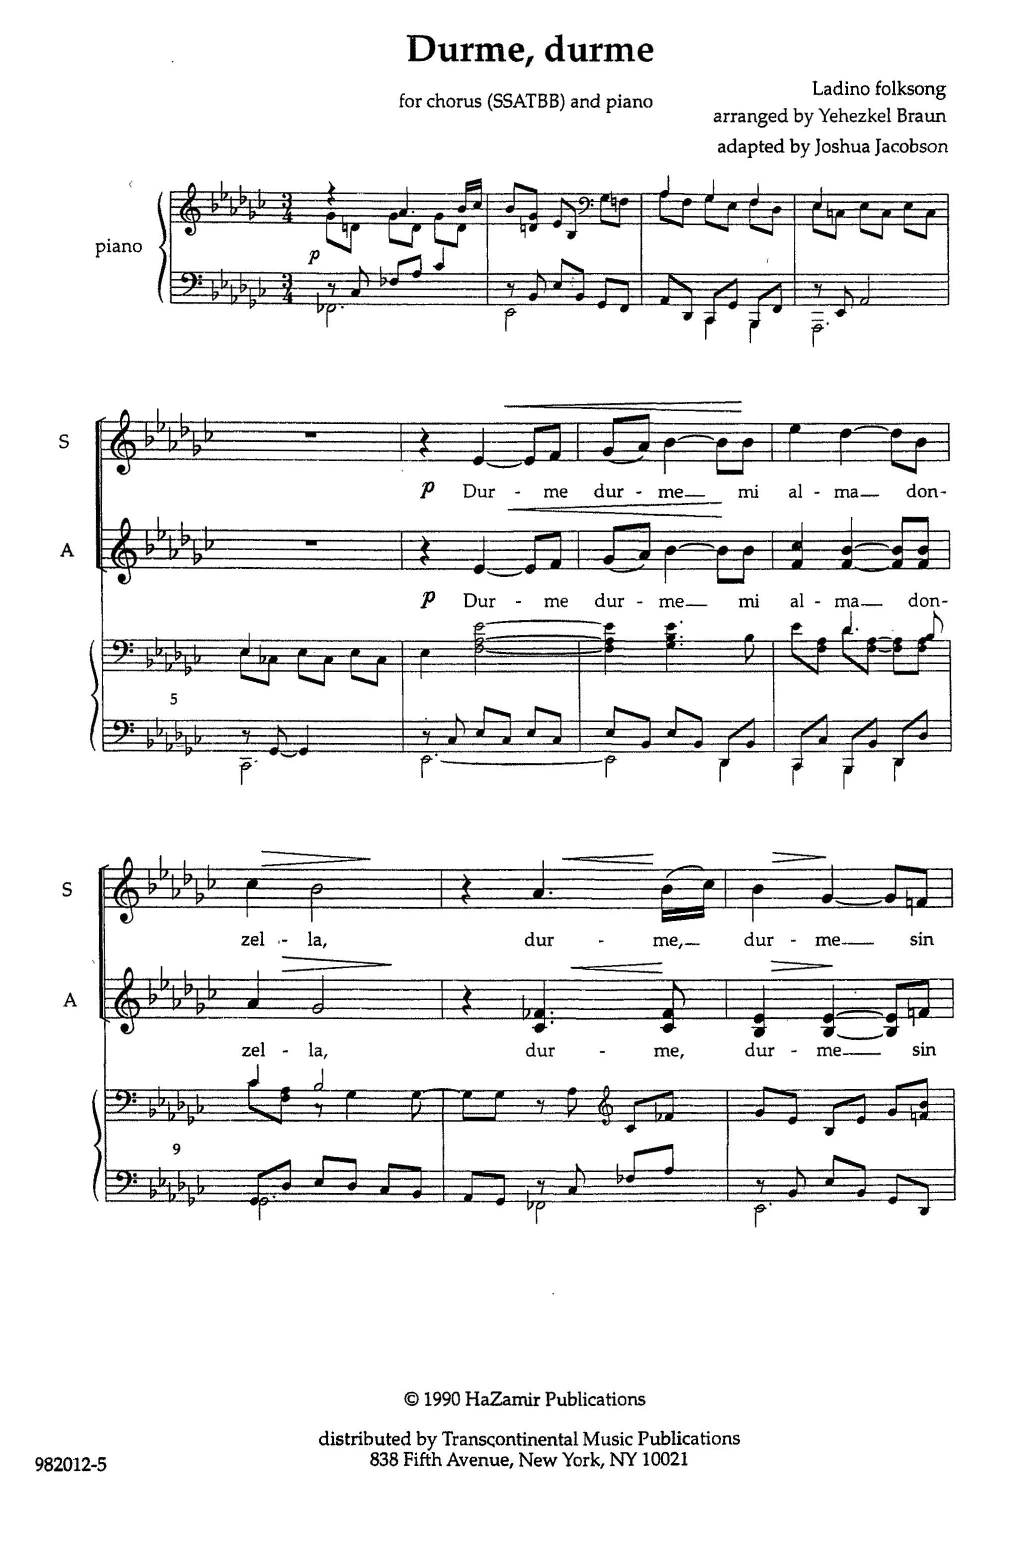 Yehezkel Braun Durme, Durme Sheet Music Notes & Chords for SATB Choir - Download or Print PDF